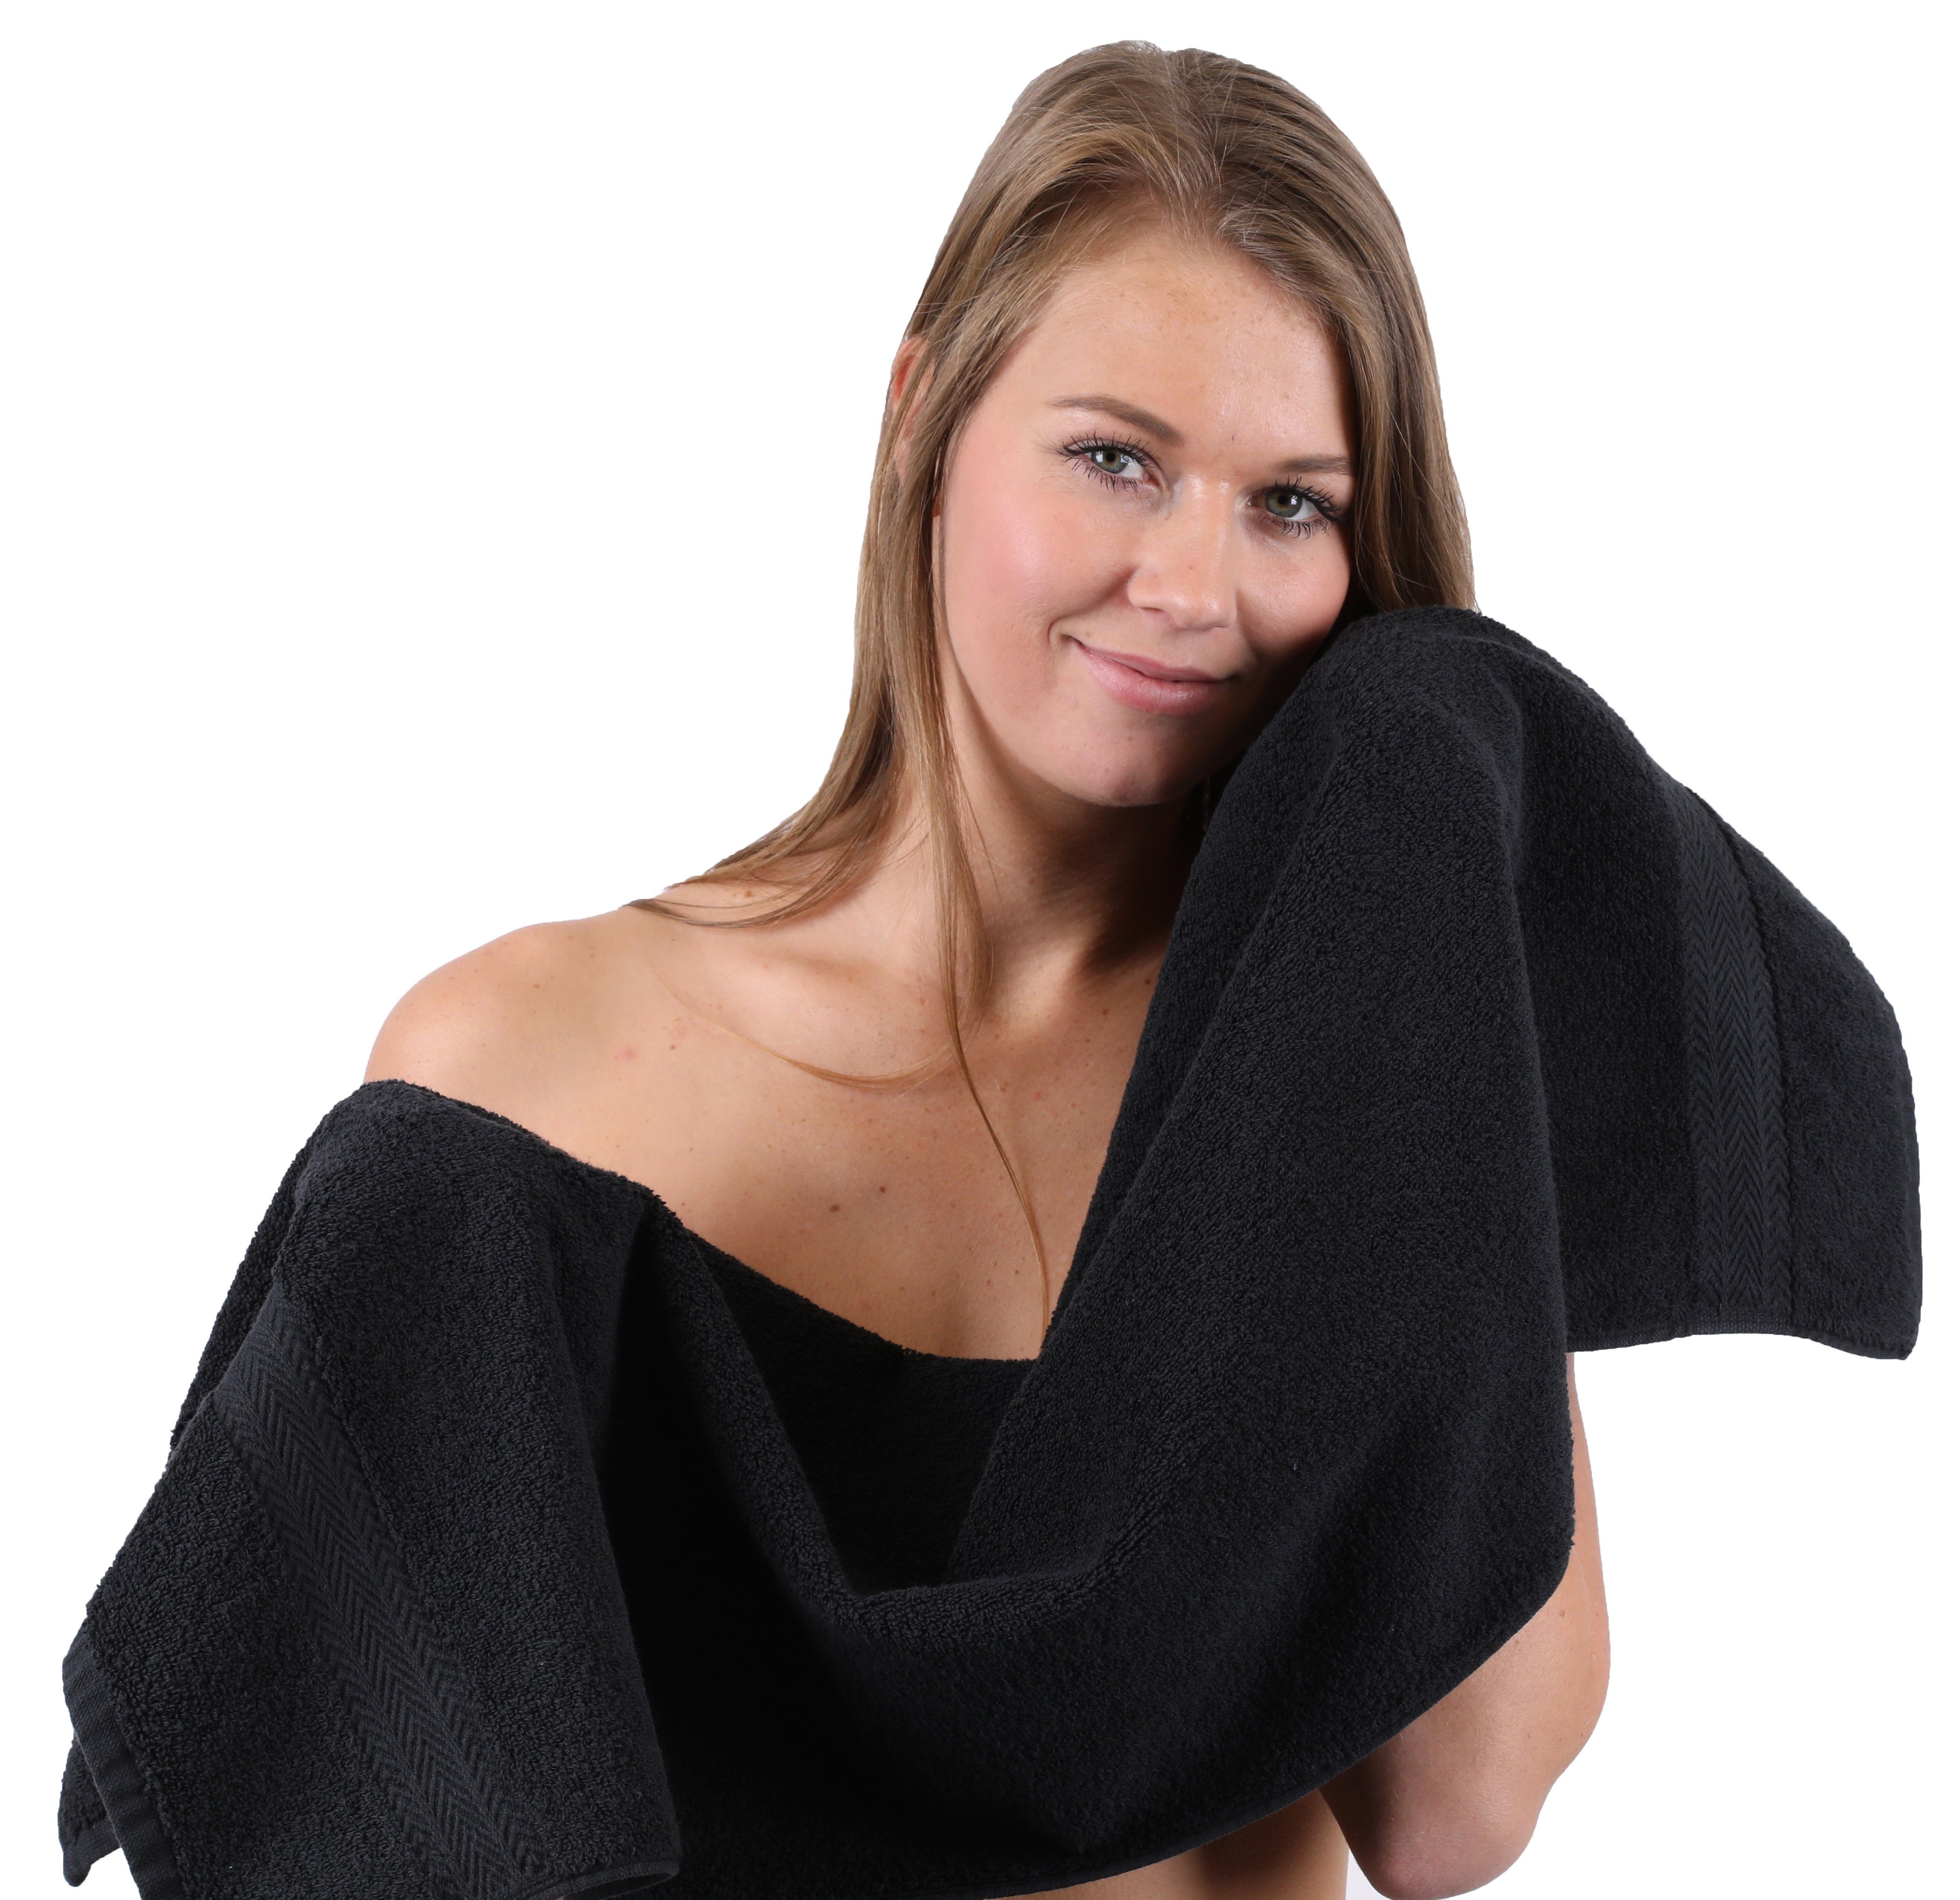 Farbe Handtuch Royalblau, Premium 100% Betz 10-TLG. Handtuch-Set Schwarz (10-tlg) Set & Baumwolle,